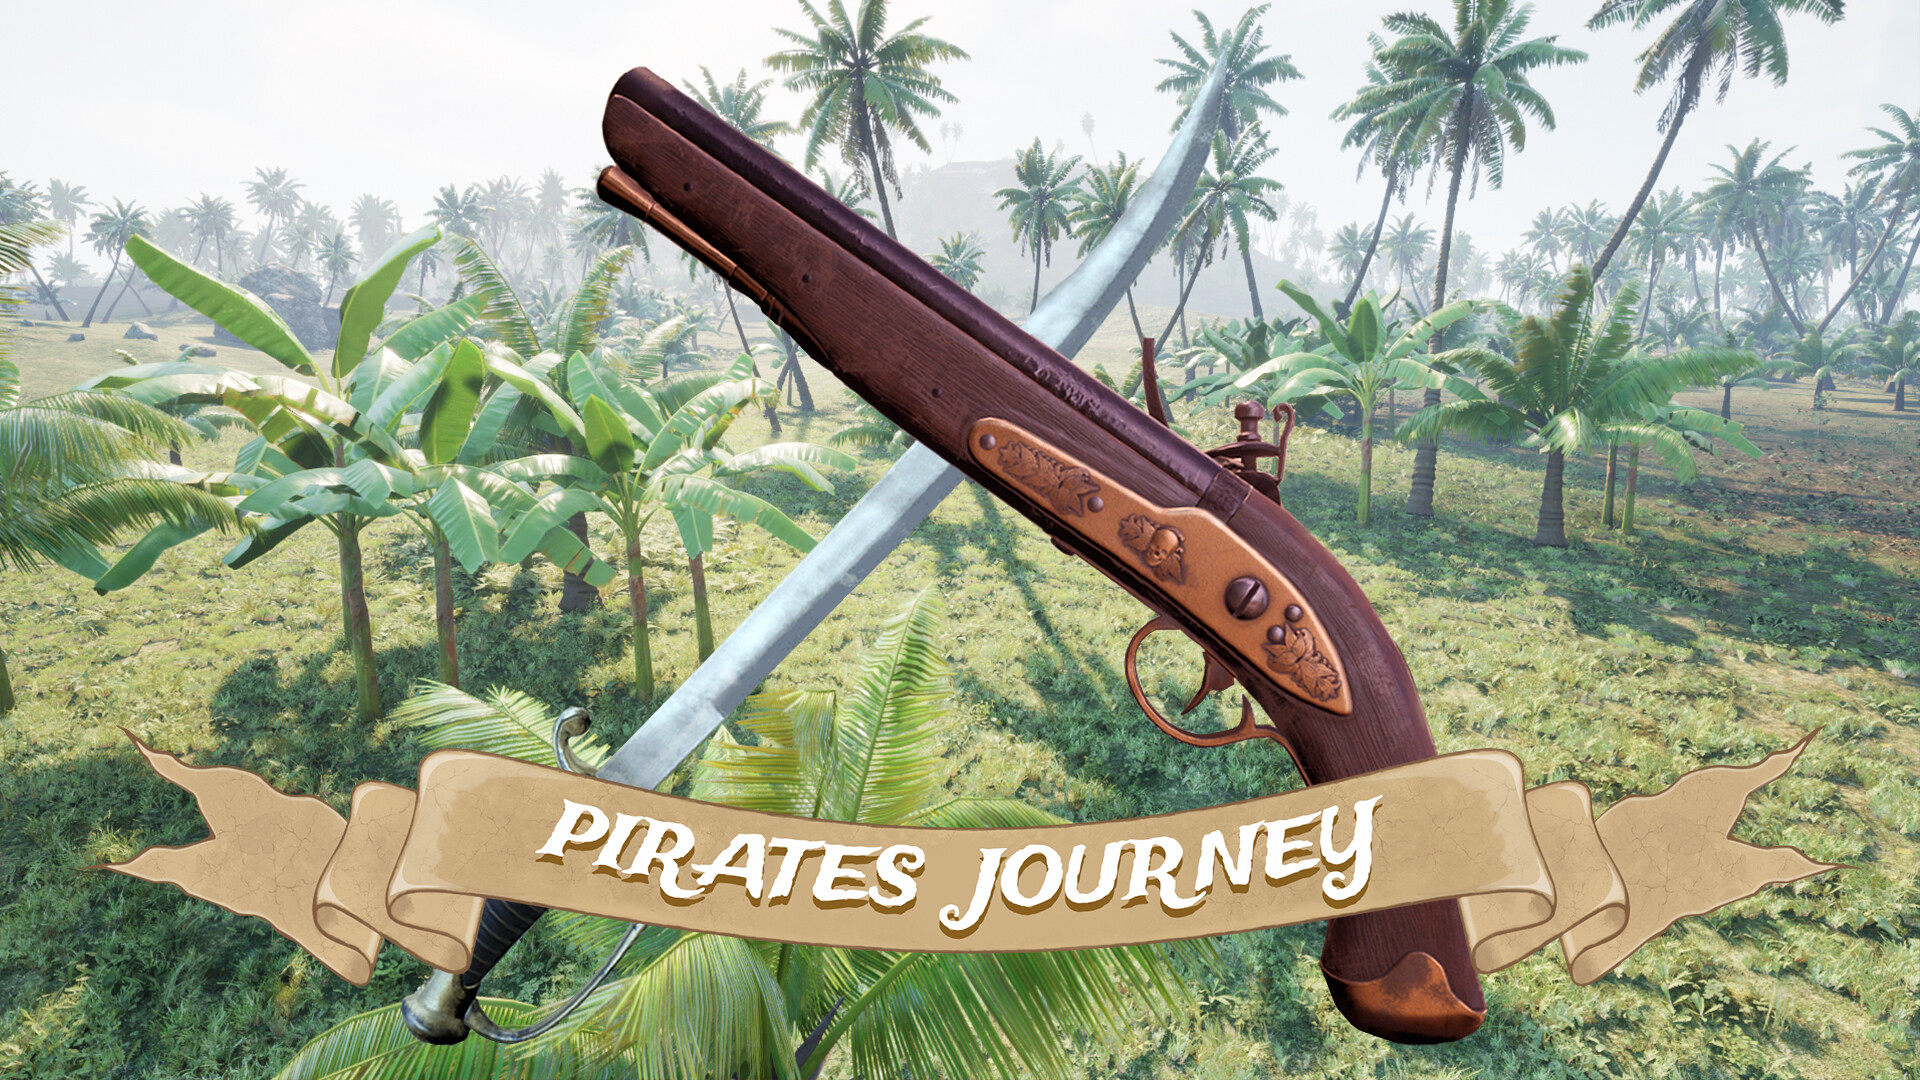 Pirates Journey no Steam